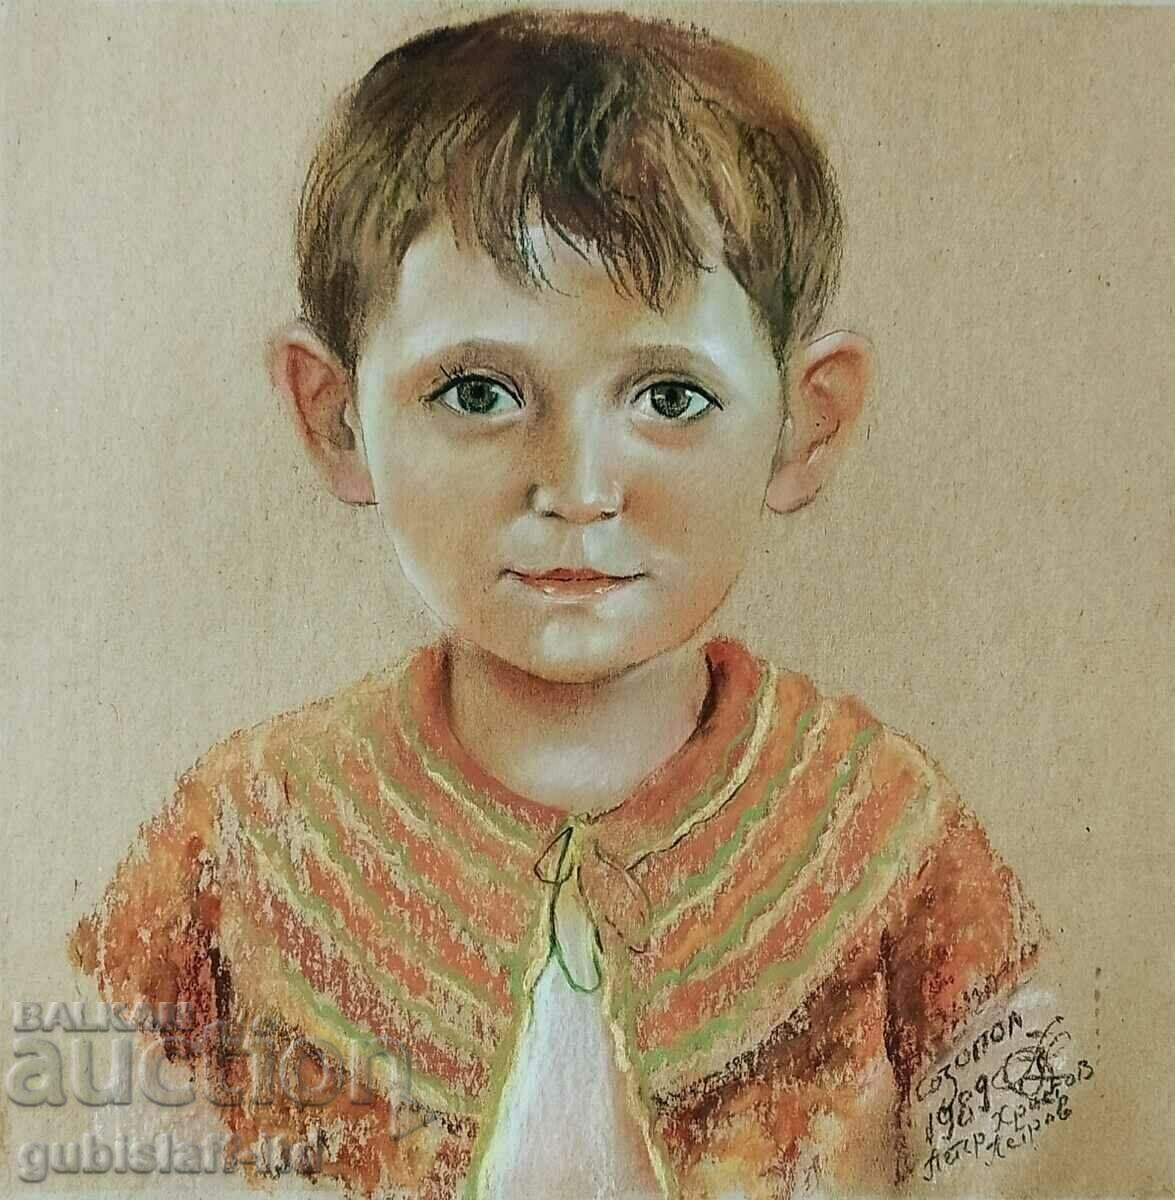 Painting, children's portrait, art. Petar Petrov, 1989